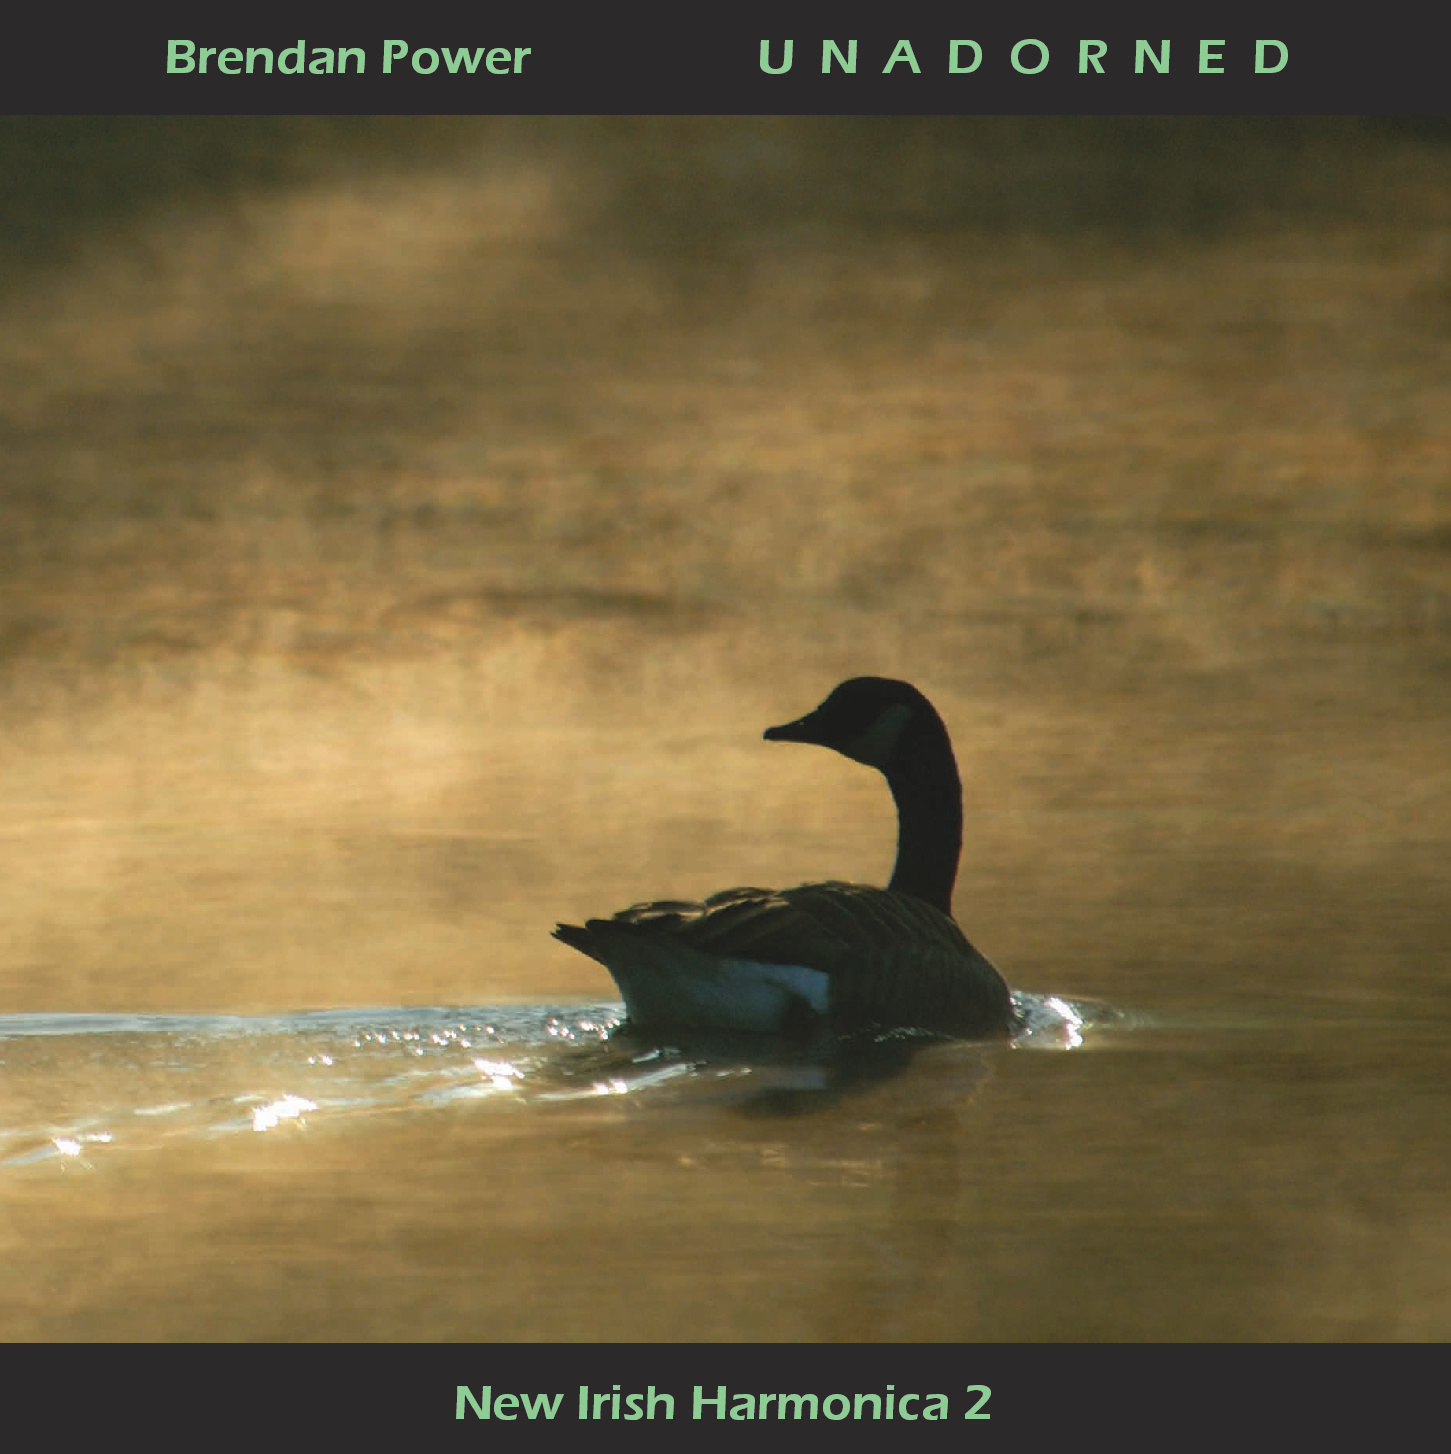 New Irish Harmonica 2 artwork